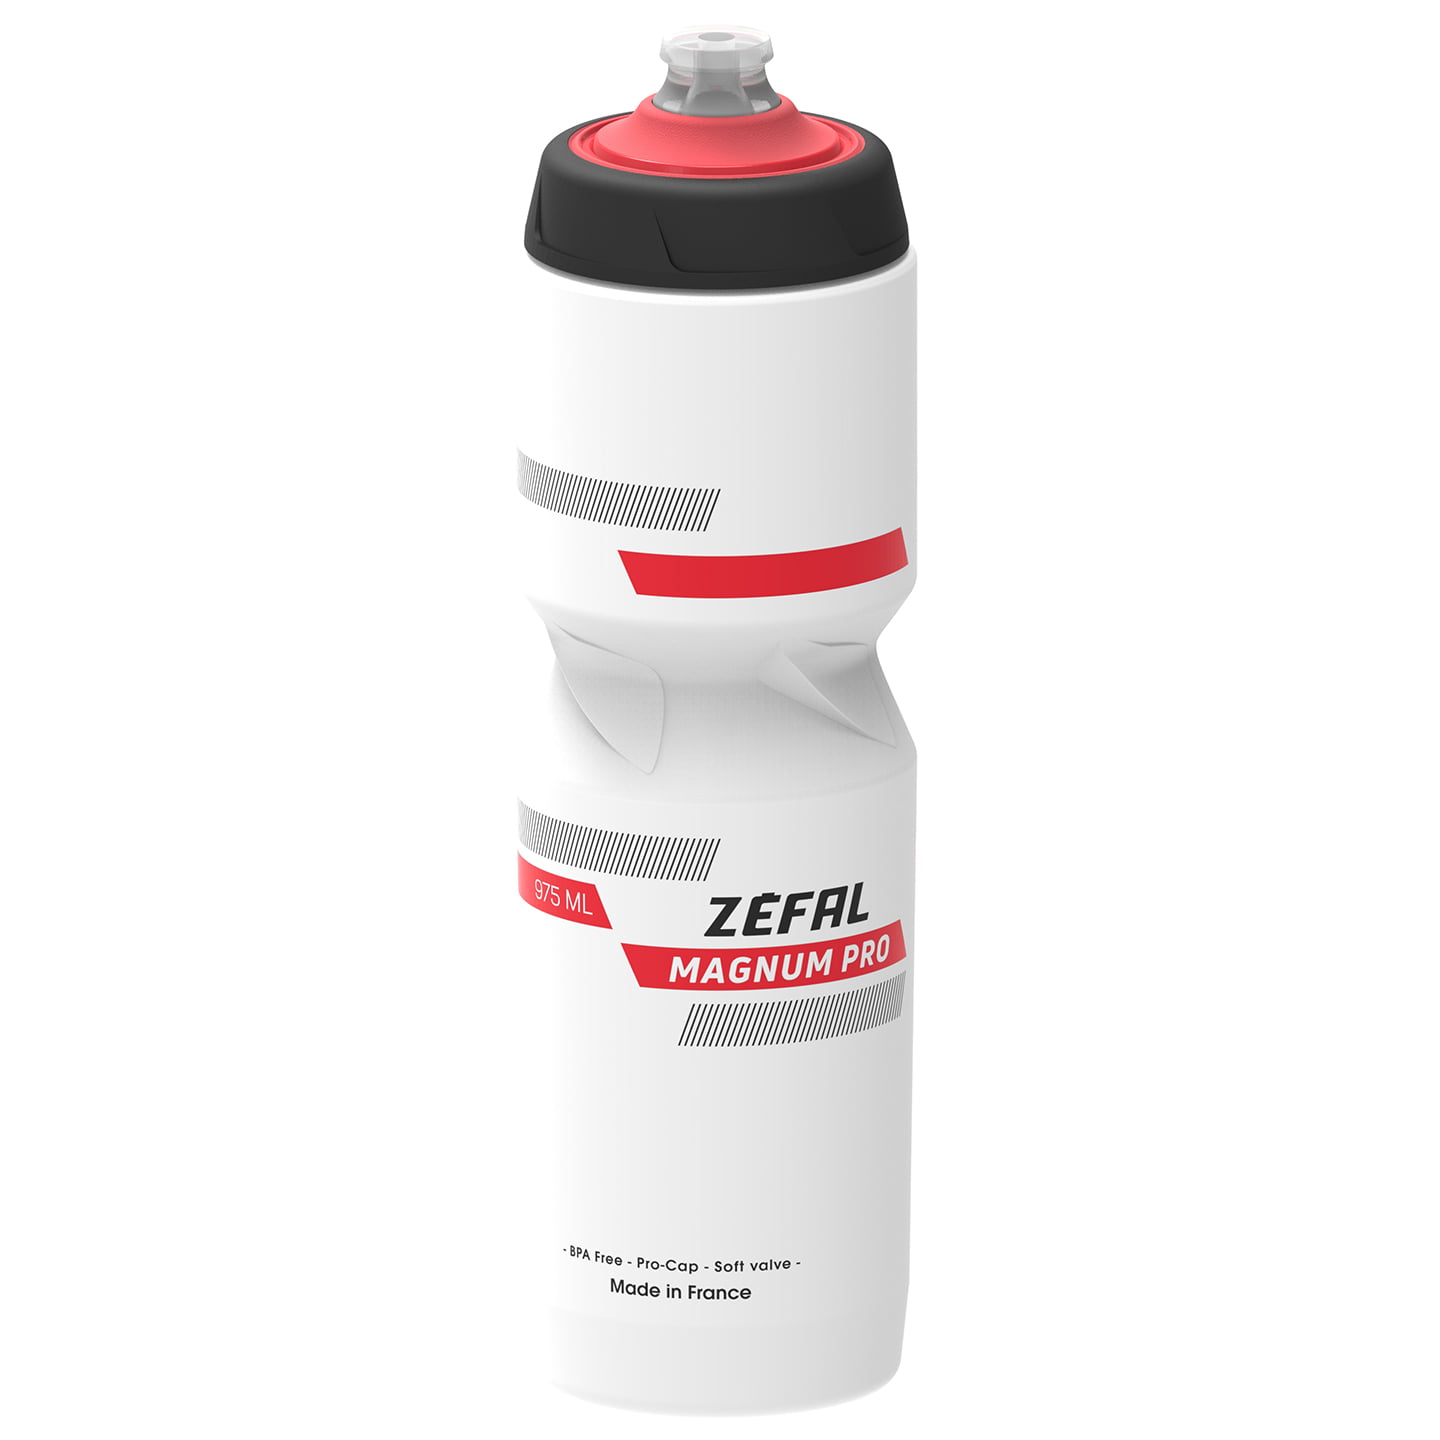 ZEFAL Magnum Pro 1000 ml Bottle Water Bottle, Bike bottle, Bike accessories